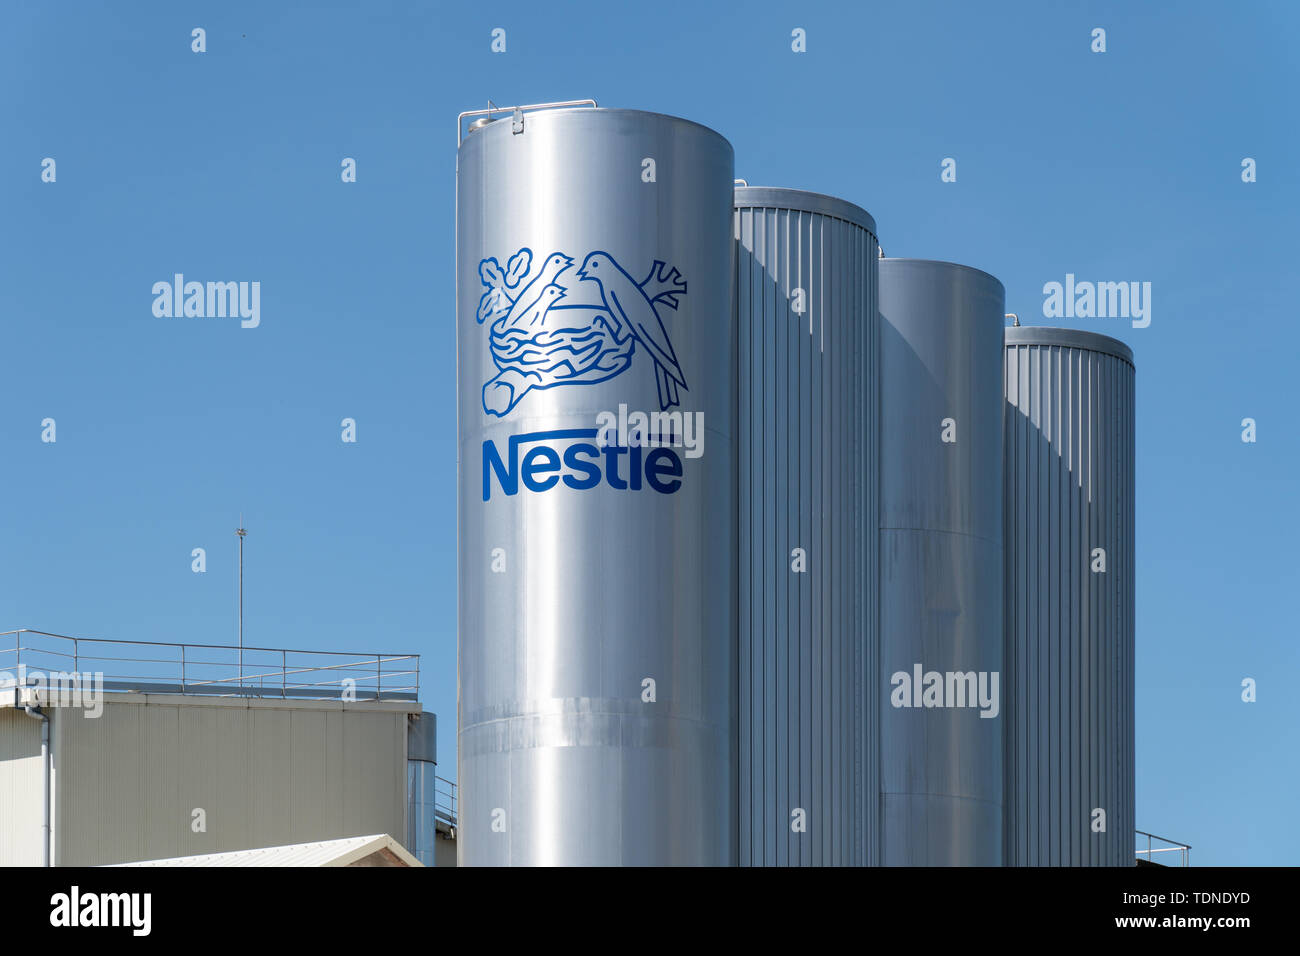 Valga, Espagne ; 16 juin 2019 : le logo de Nestlé sur le réservoir de l'usine de Valdeorras Banque D'Images